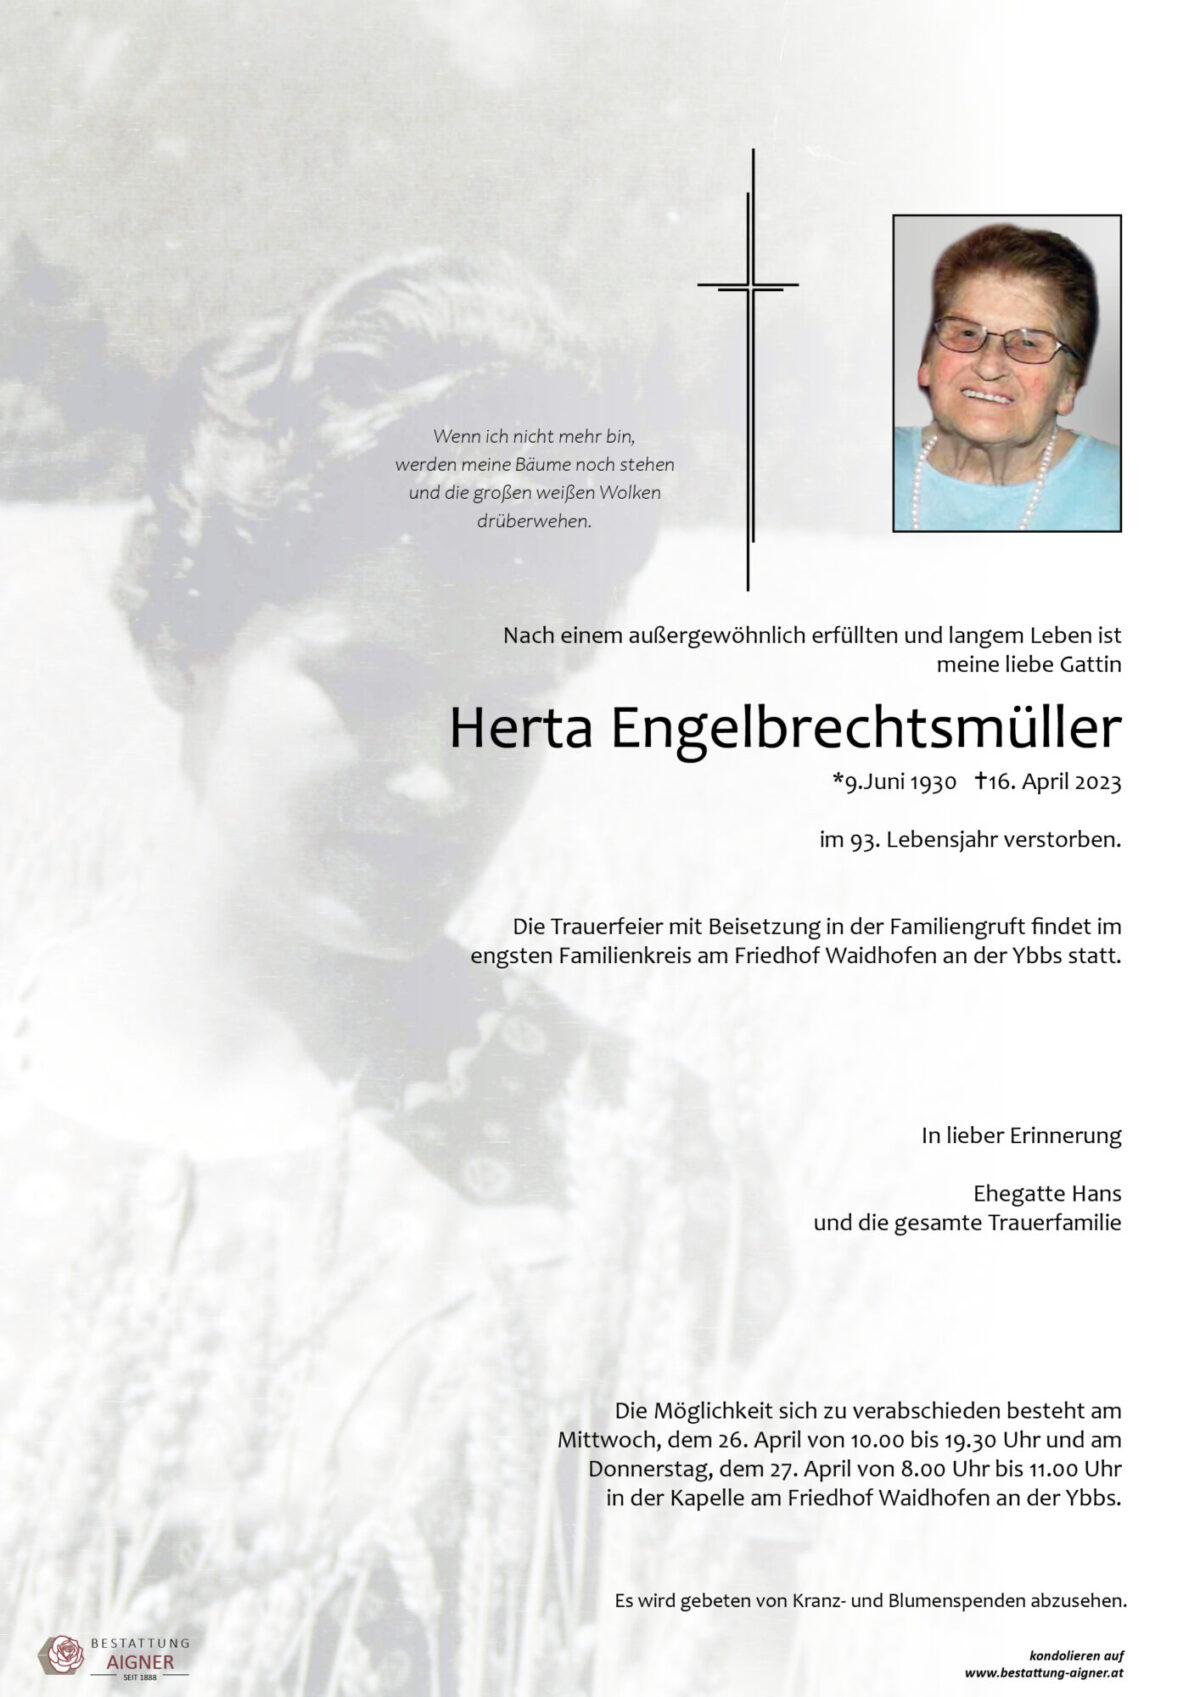 Herta Engelbrechtsmüller